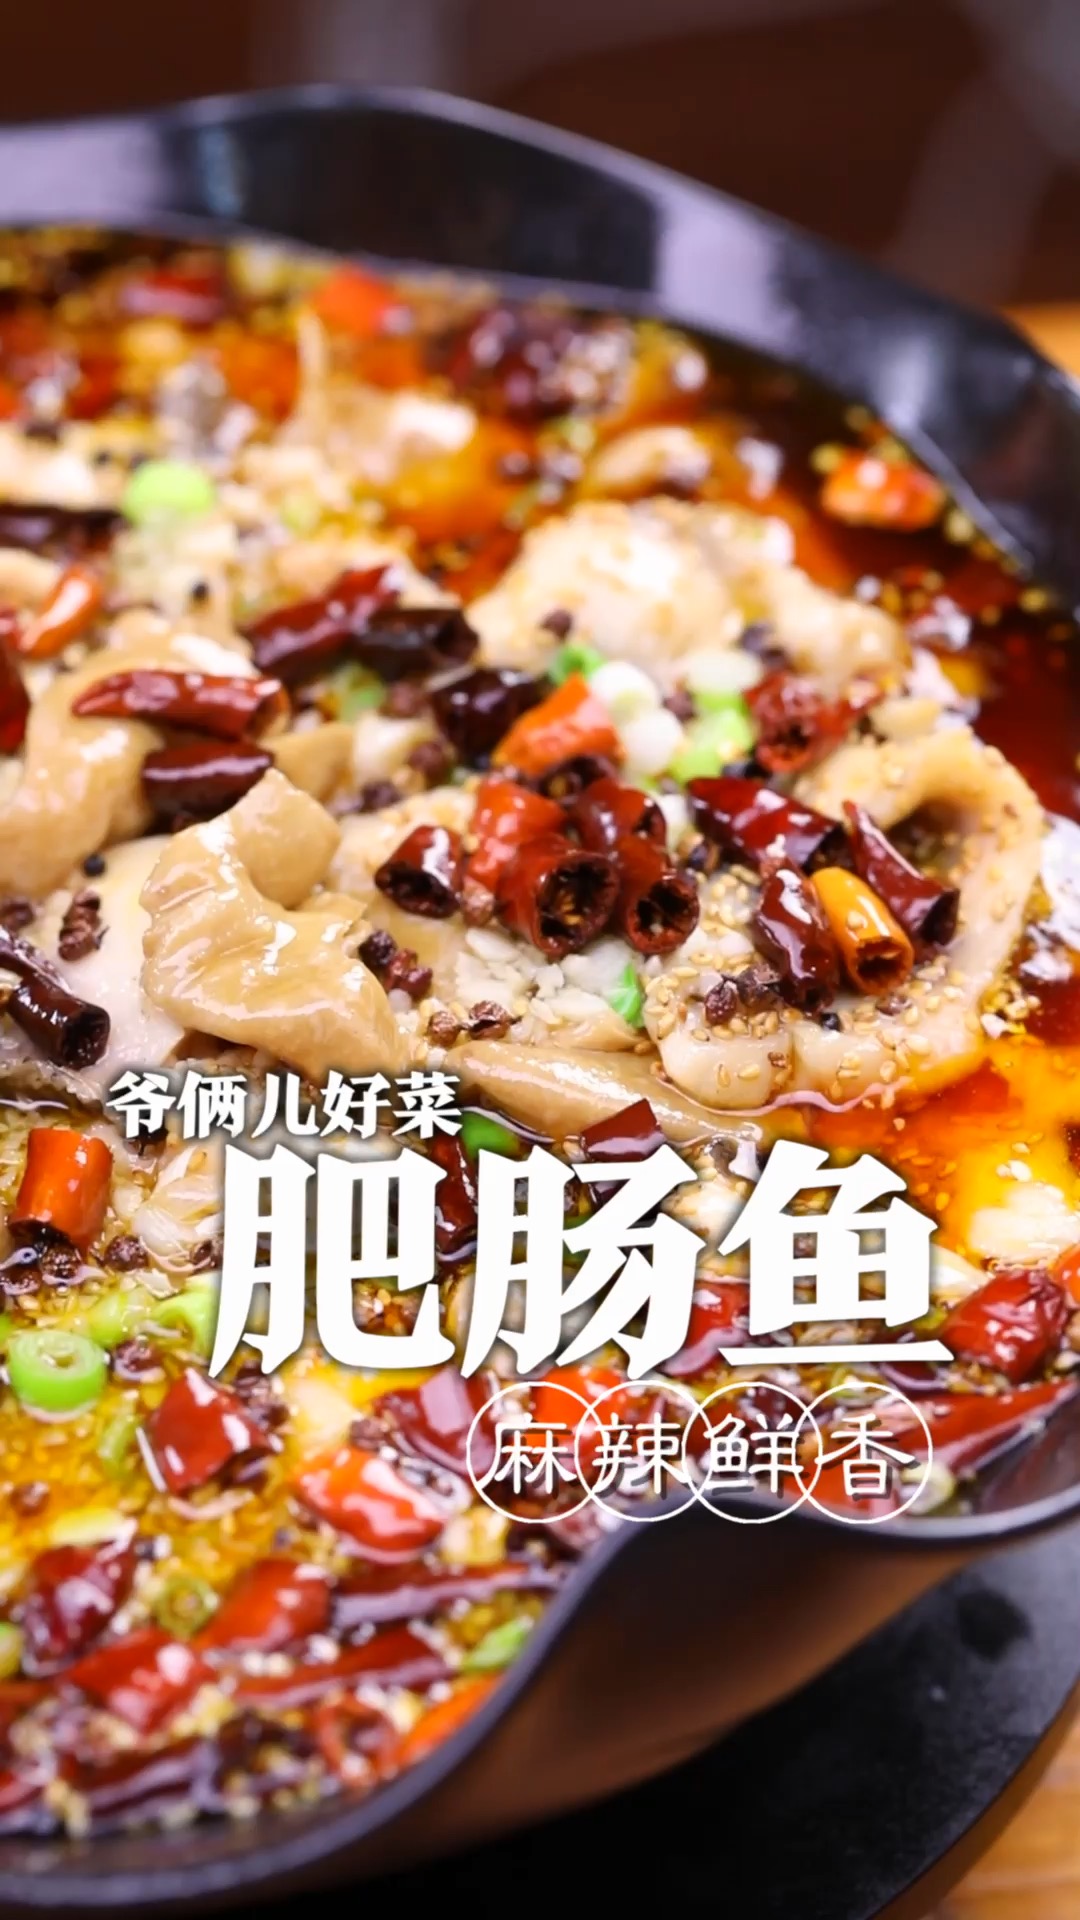 重庆江湖菜里面有道肥肠鱼,麻辣鲜香,鱼片滑嫩,上浆是关键,按照我的